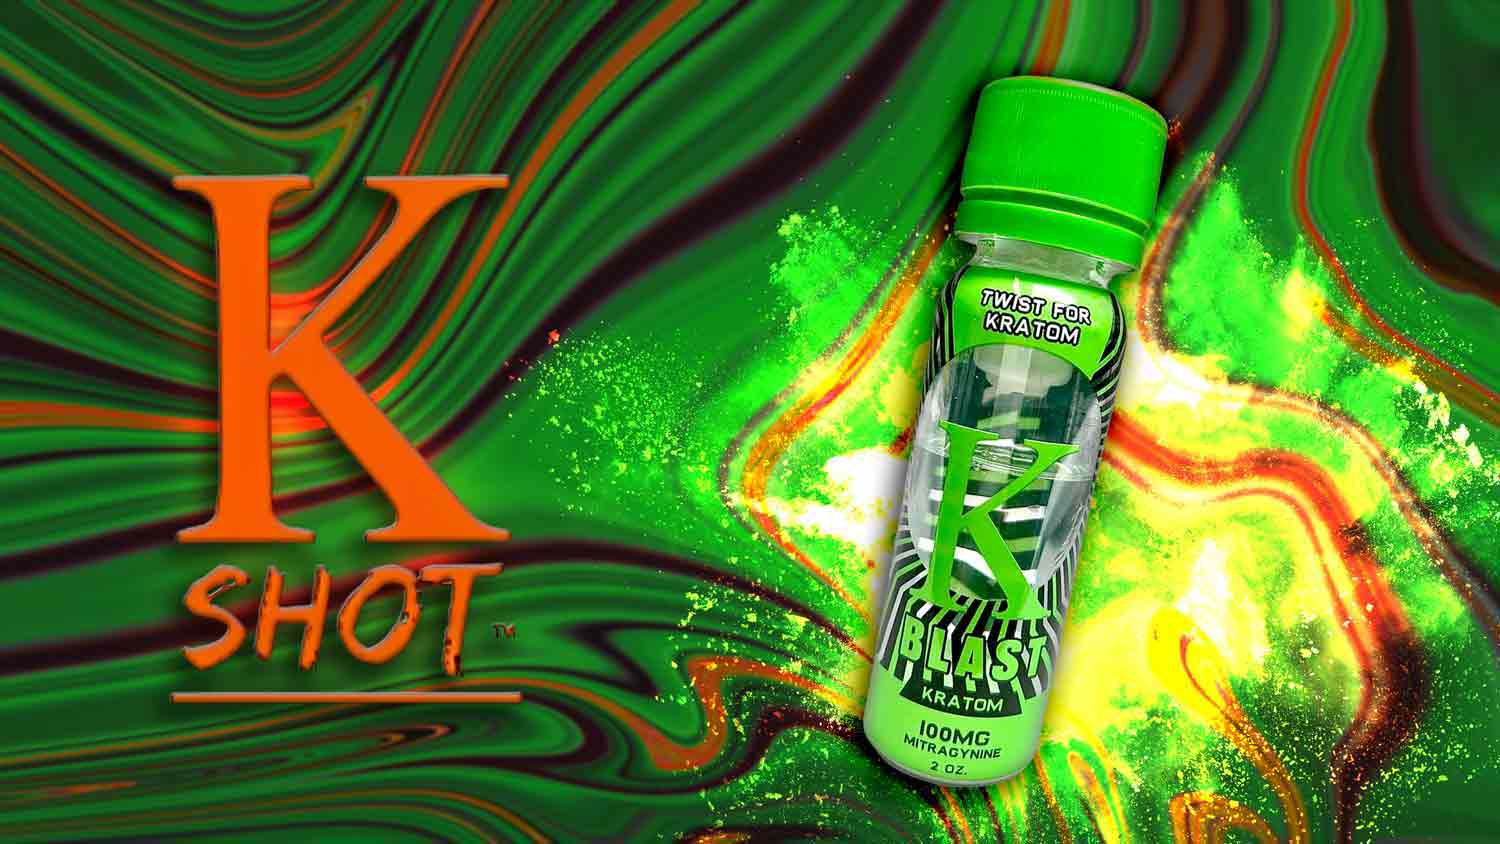 K Blast Kratom Extract Shot Energy Banner - Pure Leaf Kratom